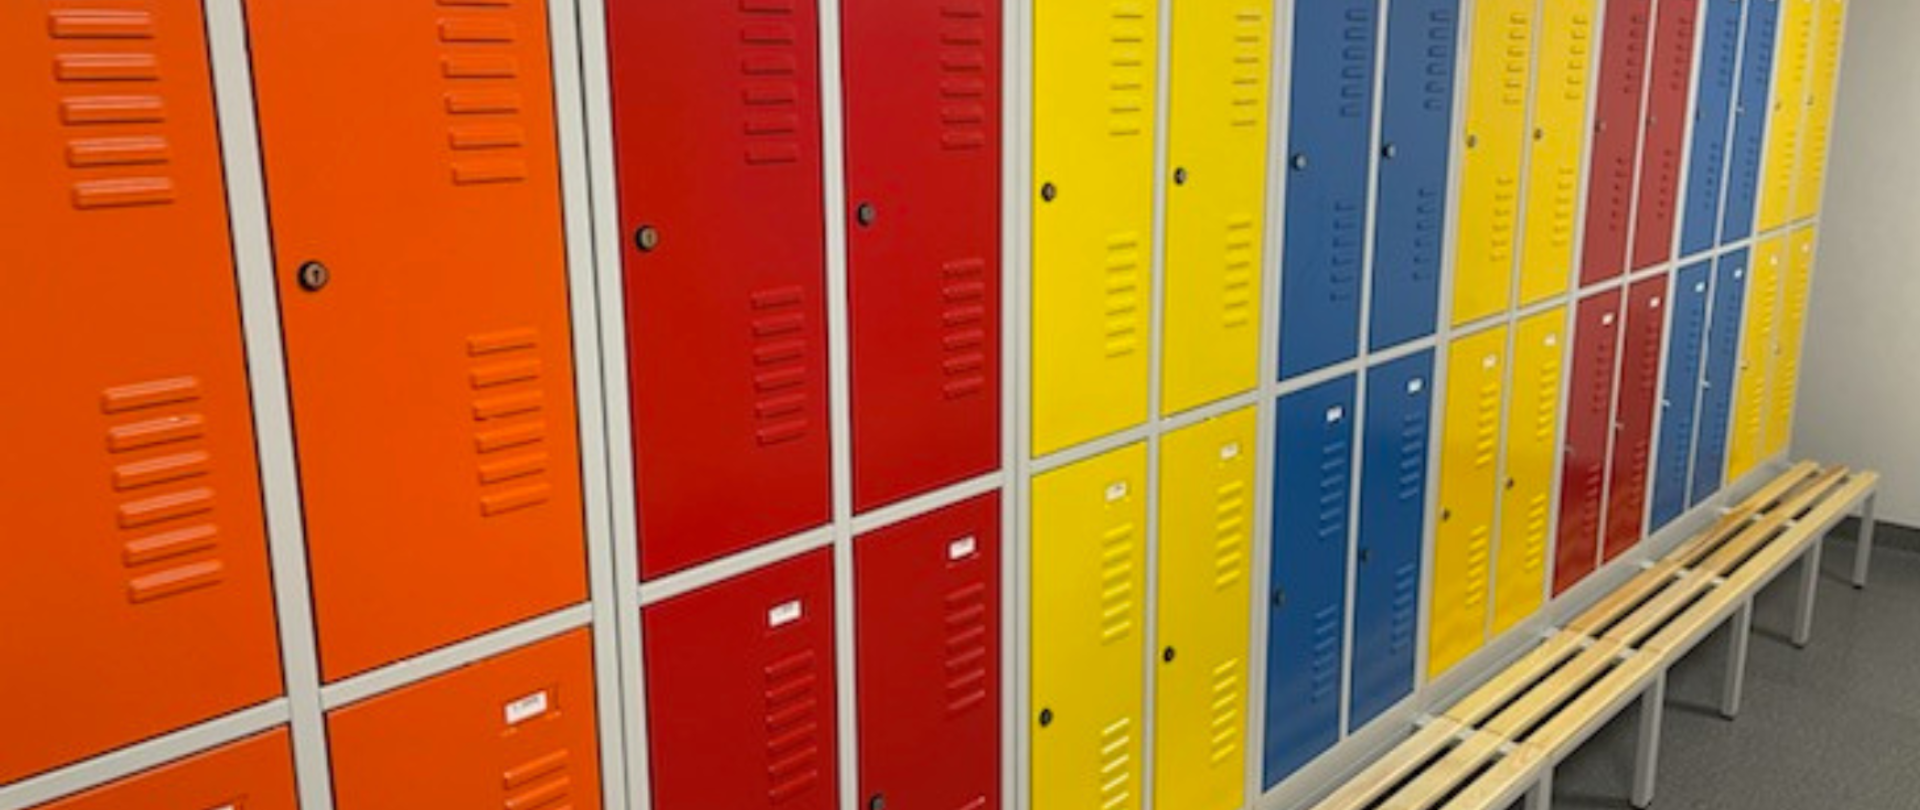 Na zdjęciu kolorowe ustawione w szeregach szafki szatniowe dla uczniów. Szafki są w kolorach: pomarańczowe, czerwone, żółte i niebieskie. Pod szafkami ławeczka z drewnianymi listewkami na siedzisku.